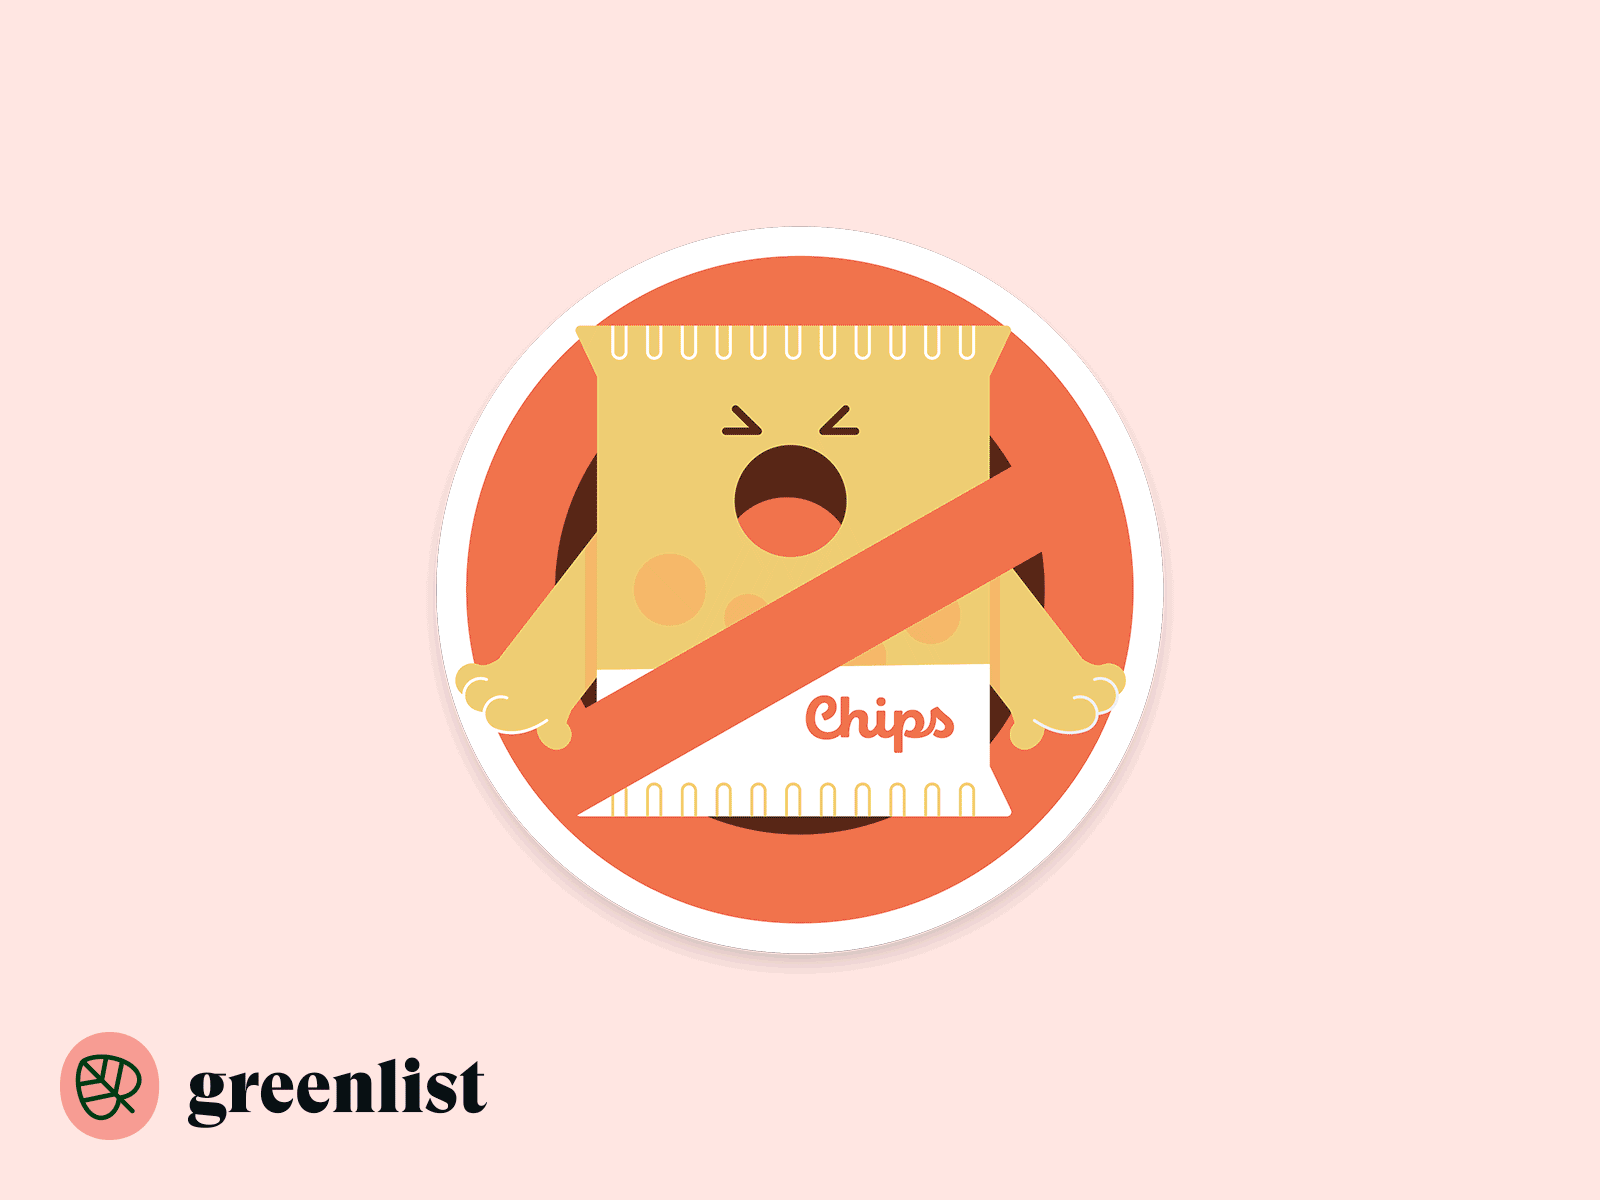 Greenlist badges climate climate change climatechange food slack stickers sustainability ui webdesign zero waste zerowaste